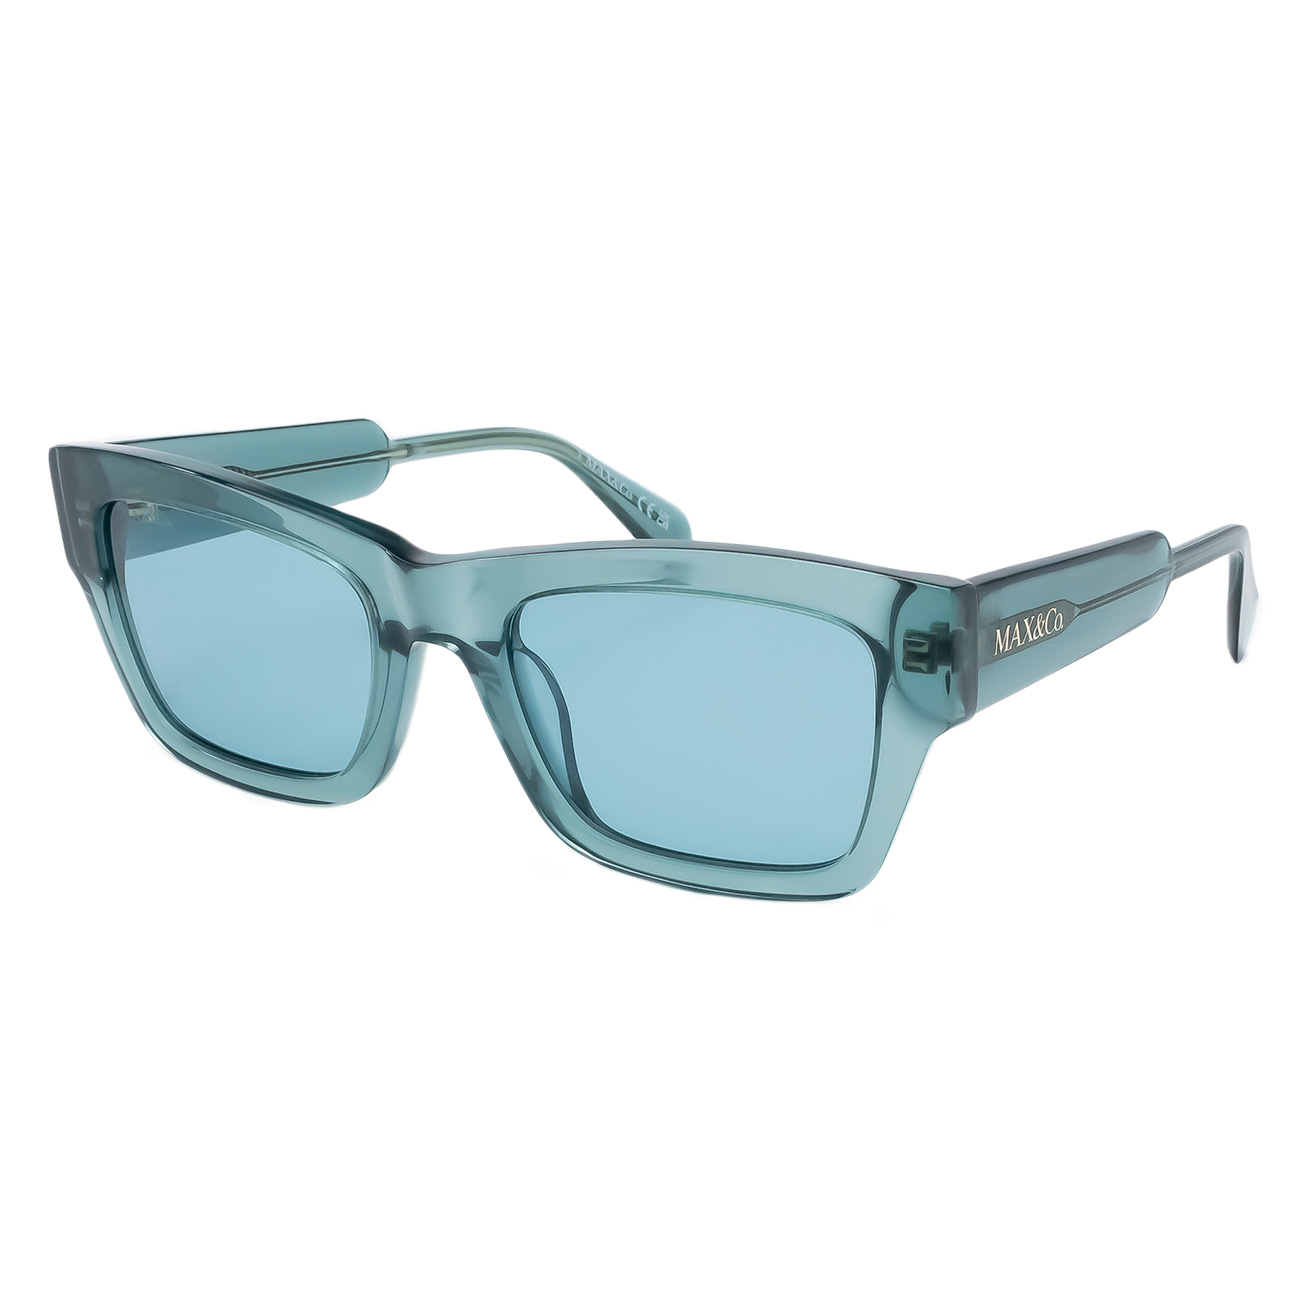 Óculos de Sol Max&Co MO0081 96N Verde Transparente